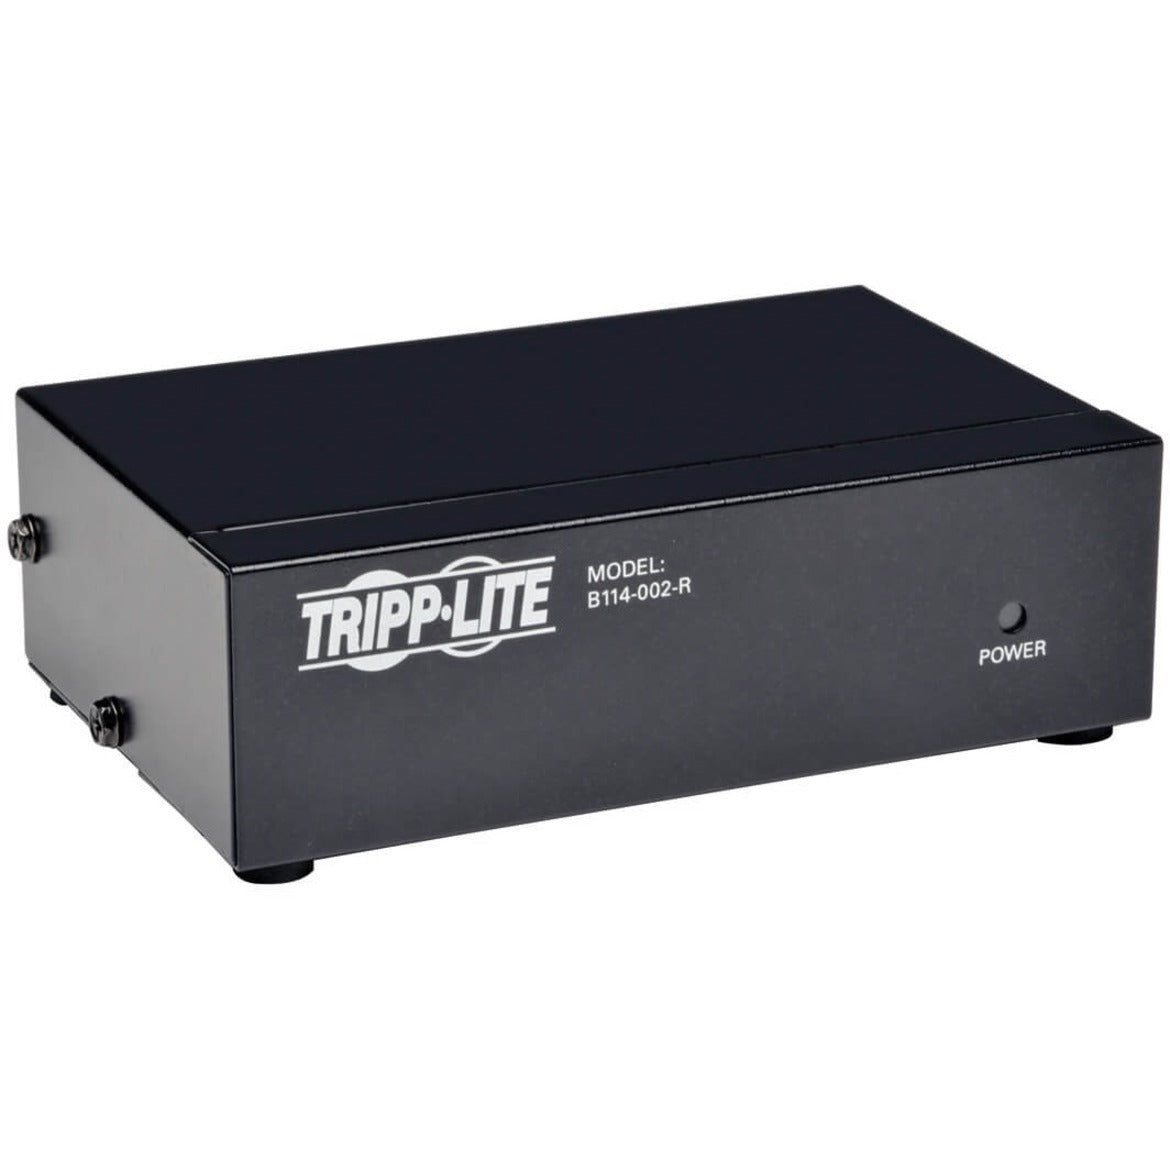 Tripp Lite B114-002-R Diviseur vidéo VGA/SVGA à deux ports HD15 noir bande passante vidéo maximale de 350 MHz. Marque: Tripp Lite Traduction de la marque: Tripp Lite